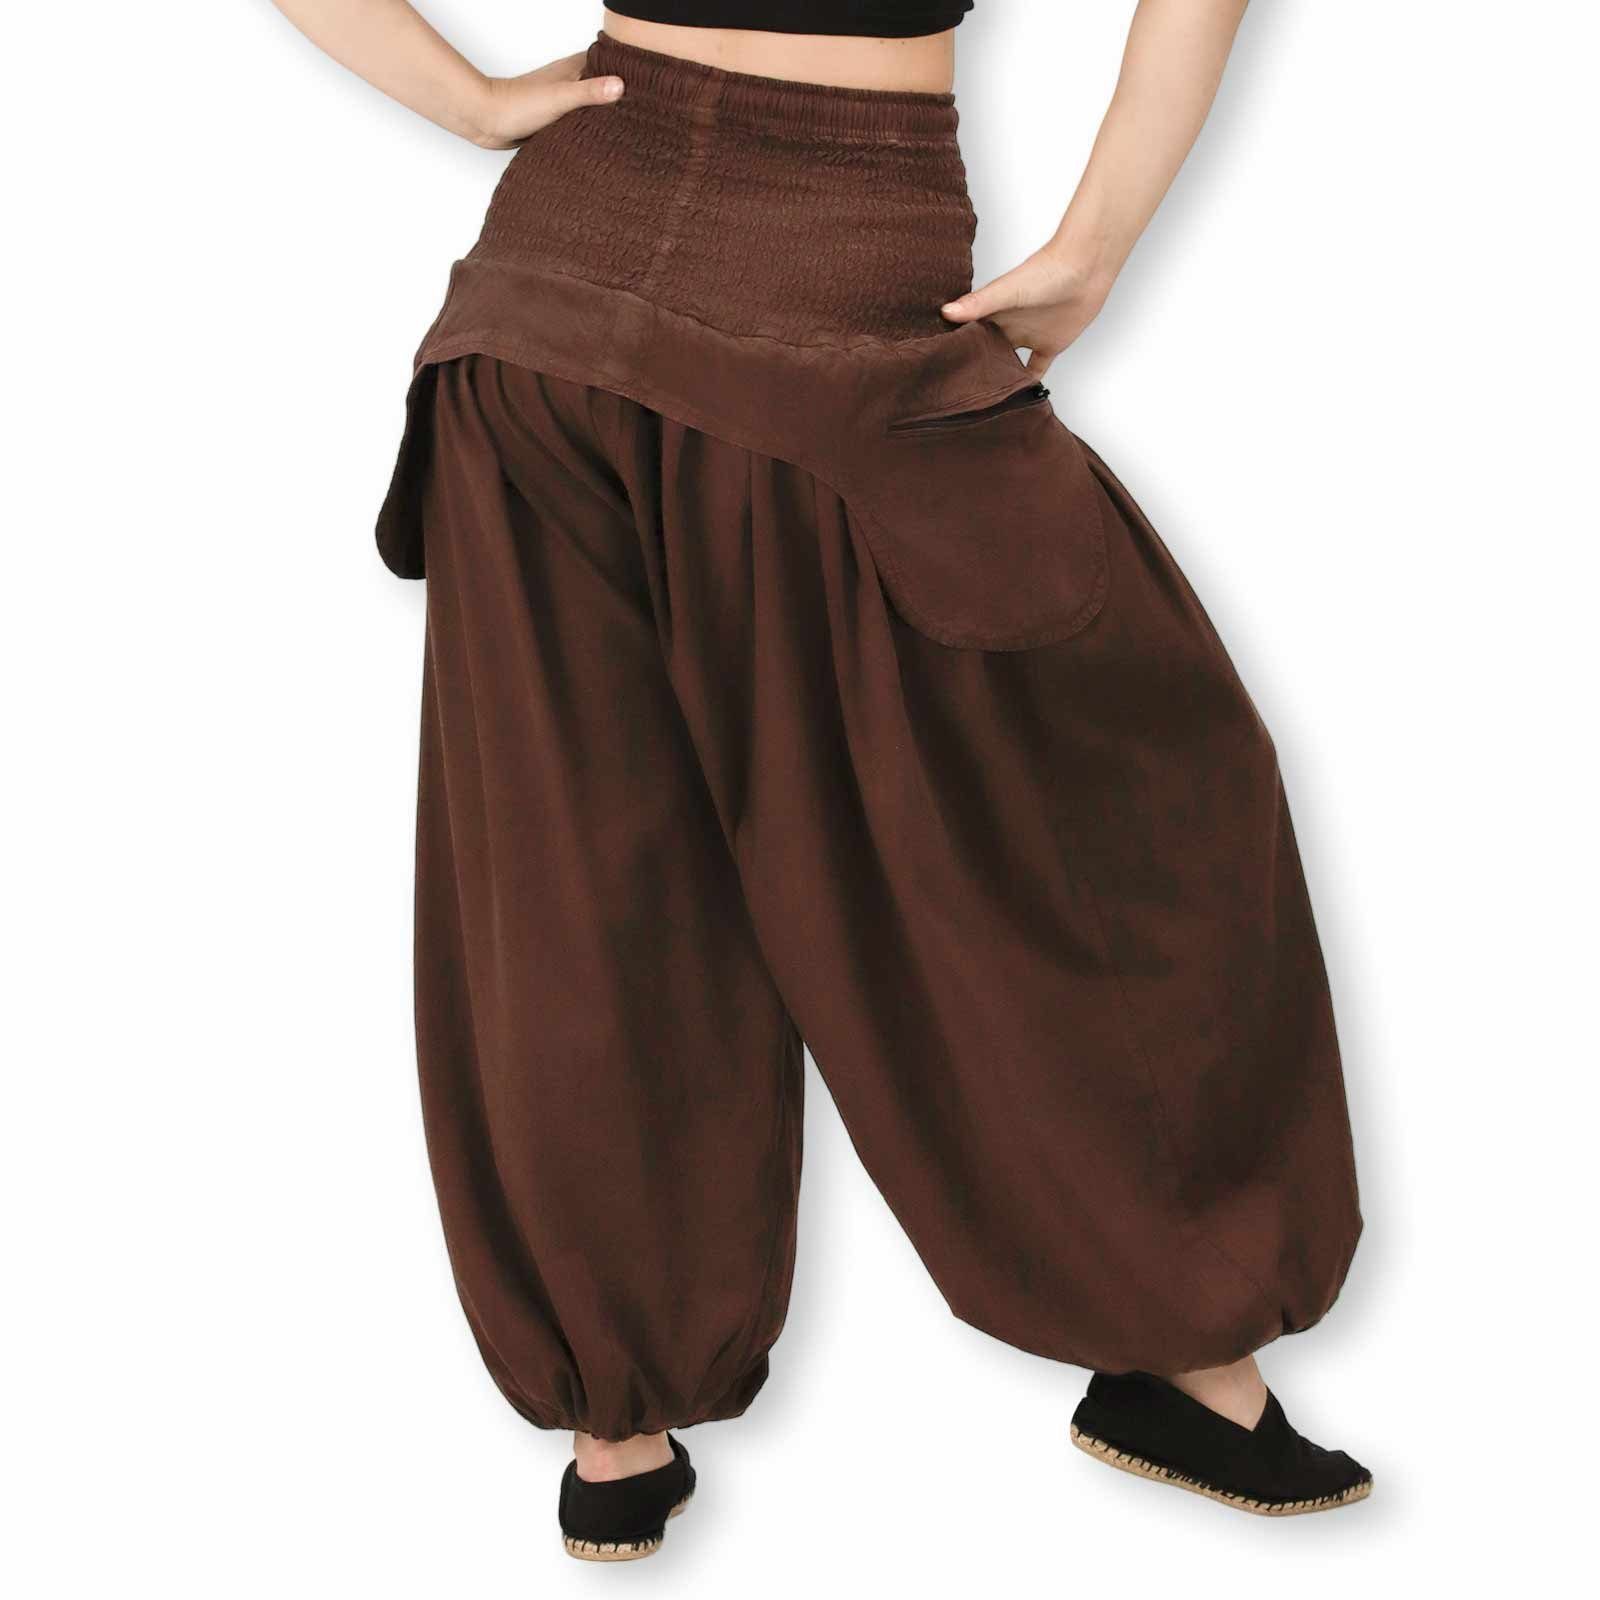 KUNST UND MAGIE Haremshose/Jodhpur-Hose Damen Hose Unifarben praktische Haremshose Braun Vintage Schürzentaschen